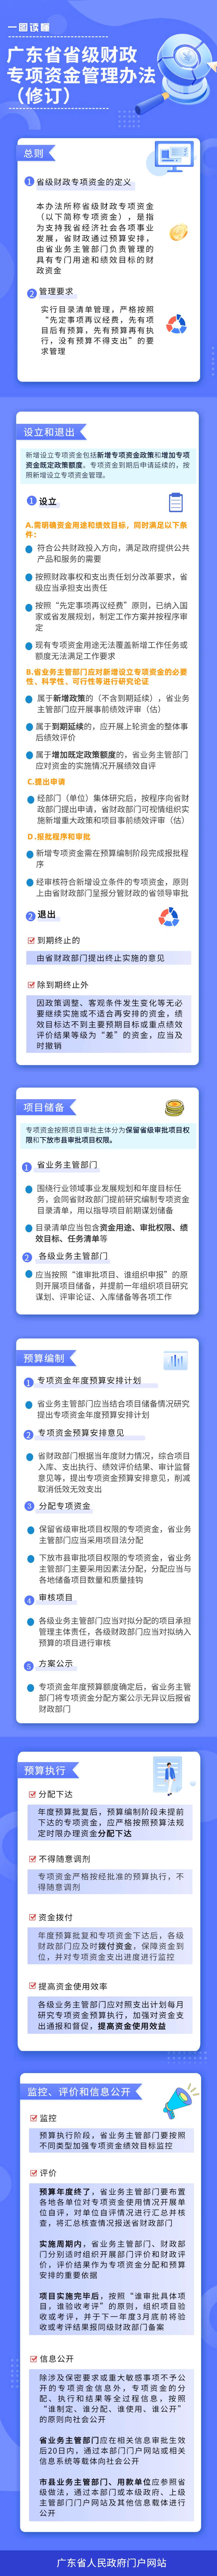 广东省省级财政专项资金管理办法(1) (2).png